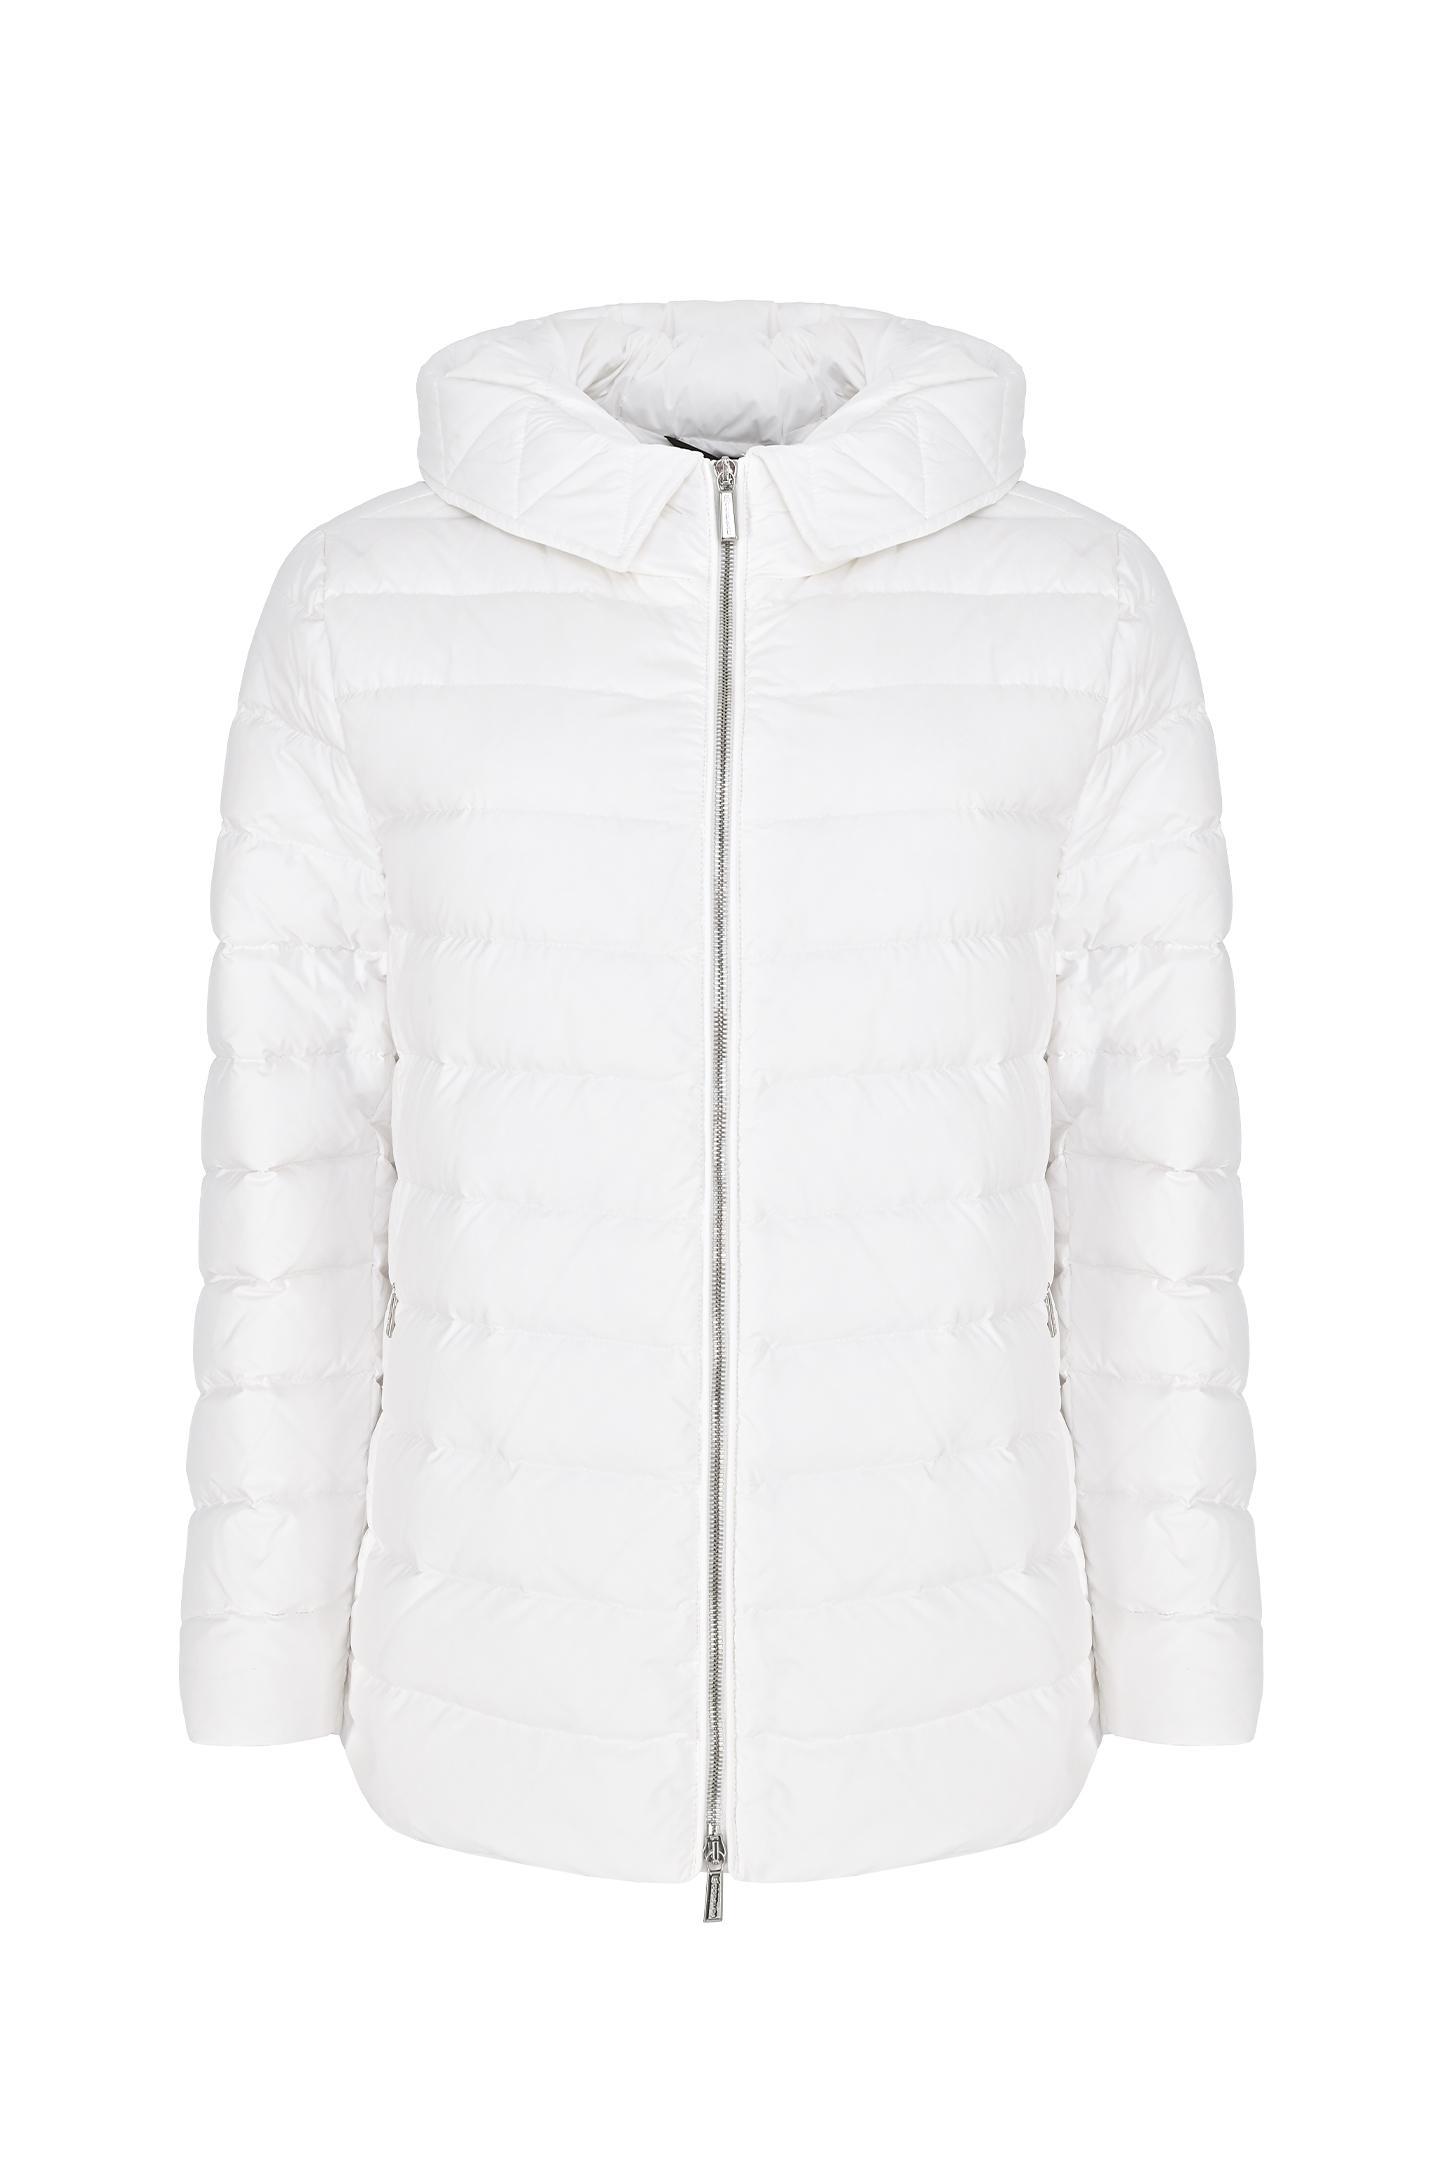 Куртка MOORER ZERMATT-LAP, цвет: Белый, Женский